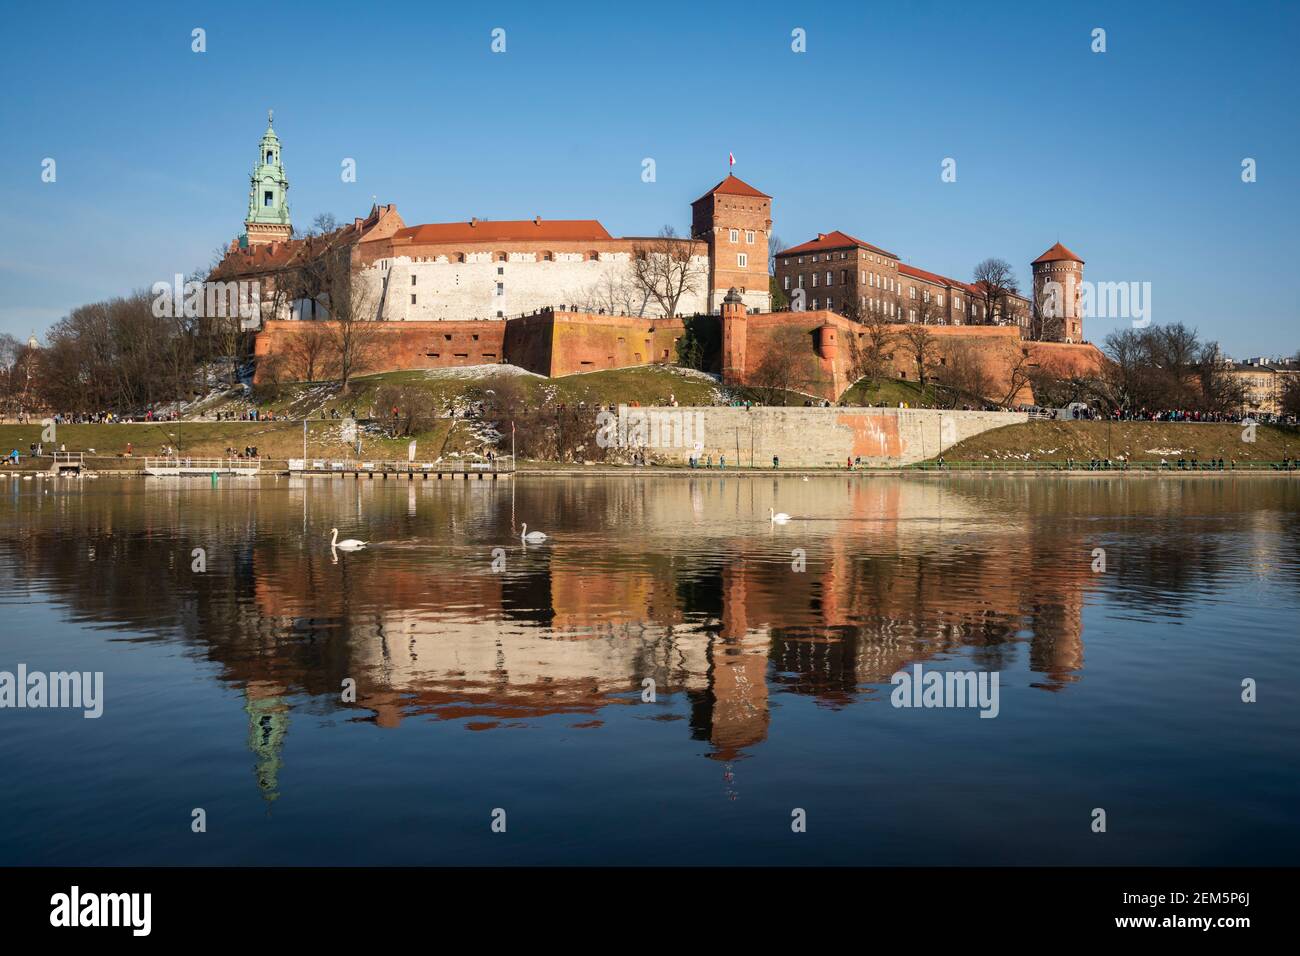 Castello di Wawel nel fiume Vistola di Cracovia. Polonia, Europa. Foto Stock